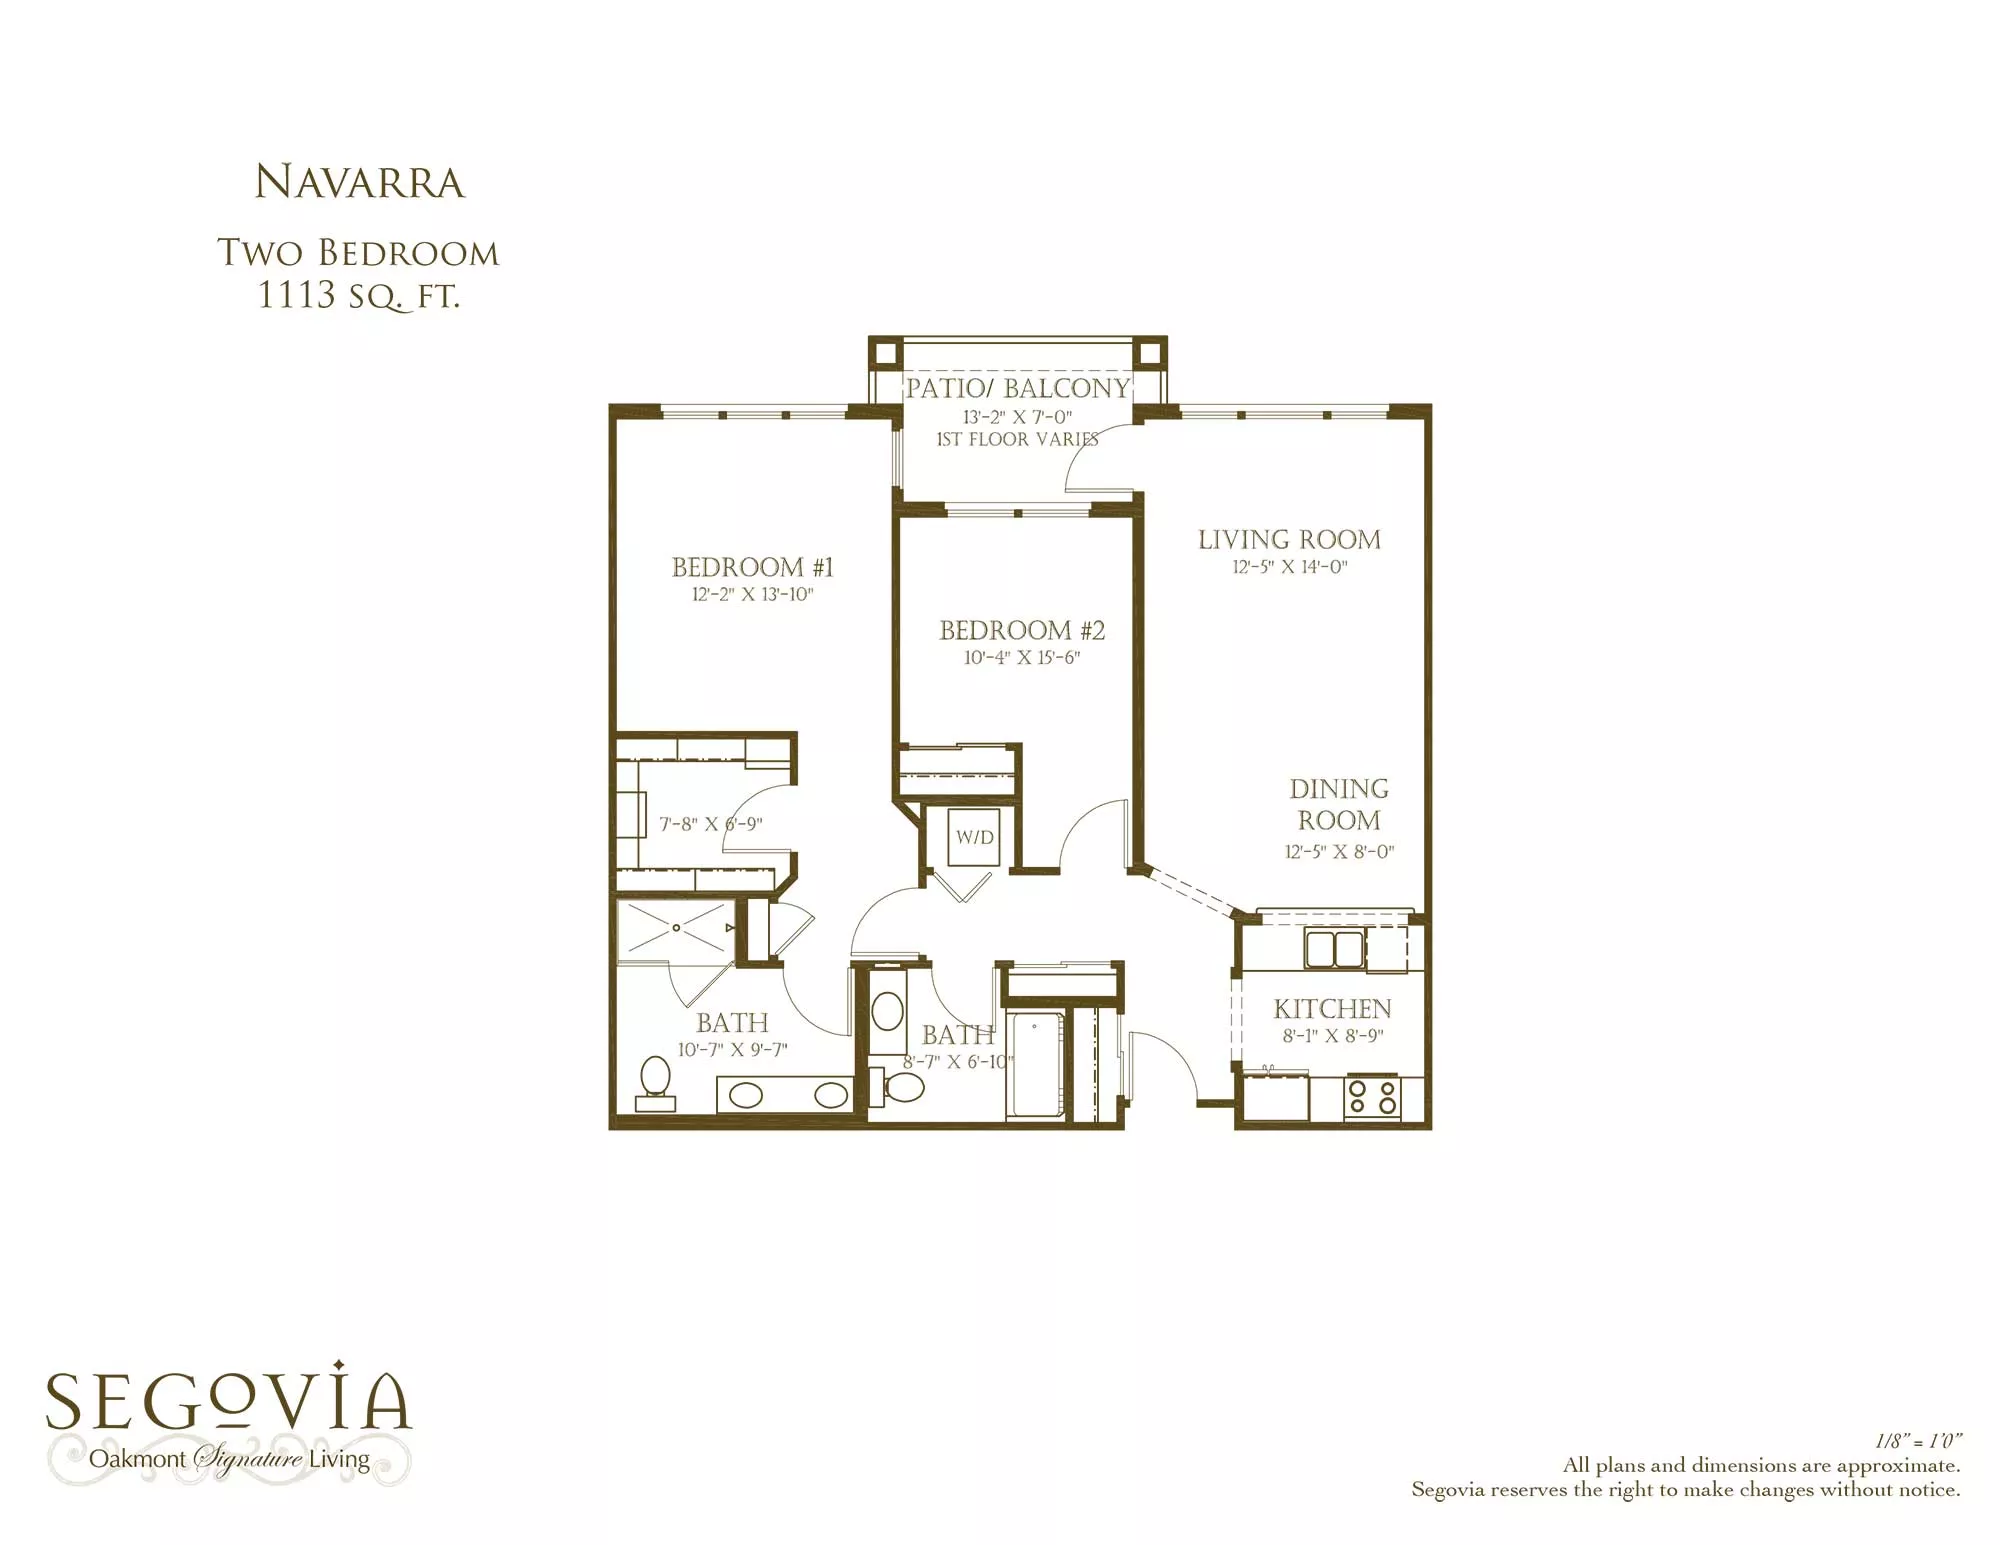 Navarra two bedroom floor plan